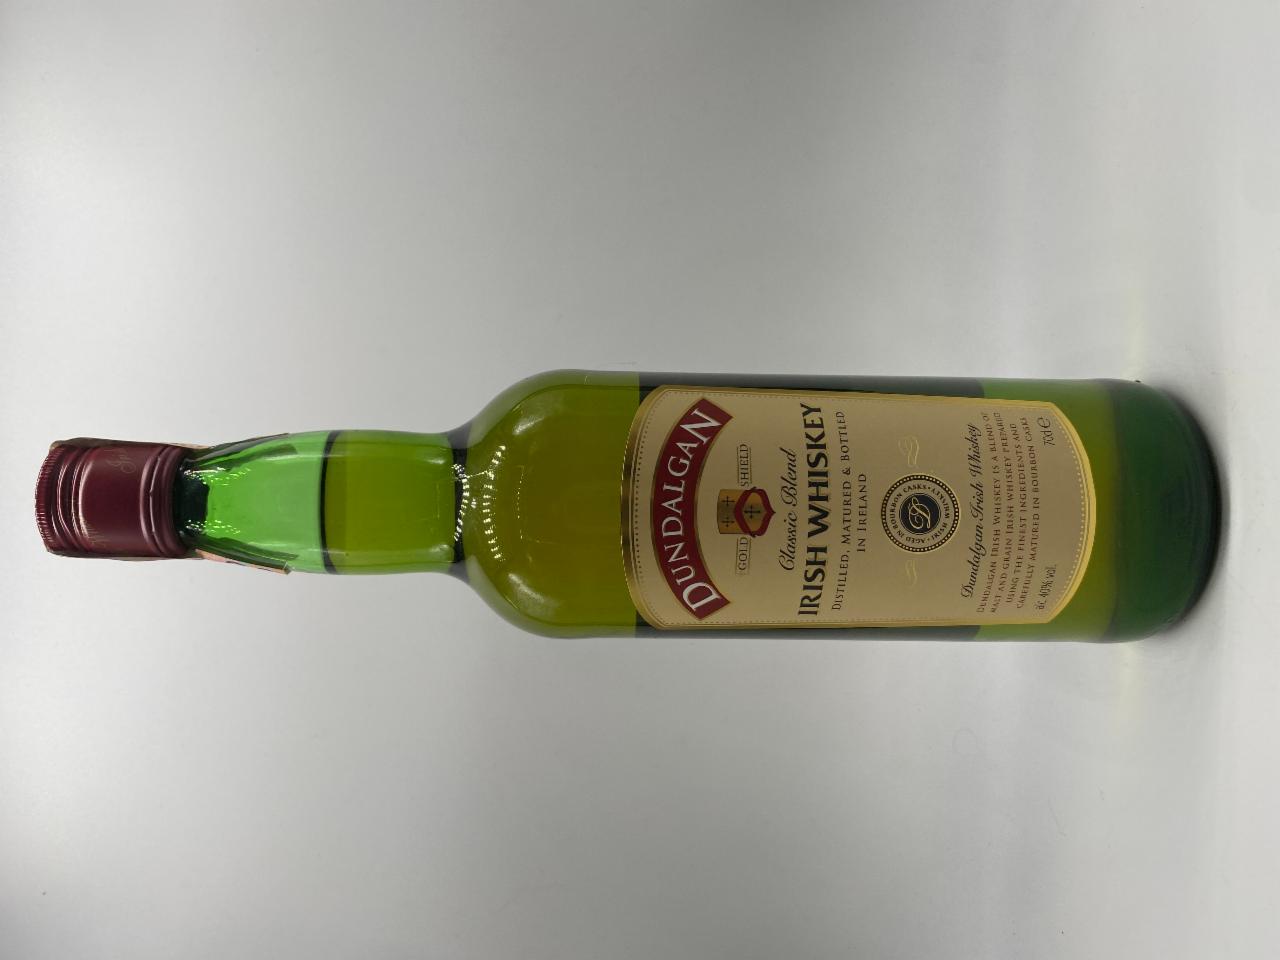 J&B scotch whisky 40% - nutriční a hodnoty kalorie, kJ